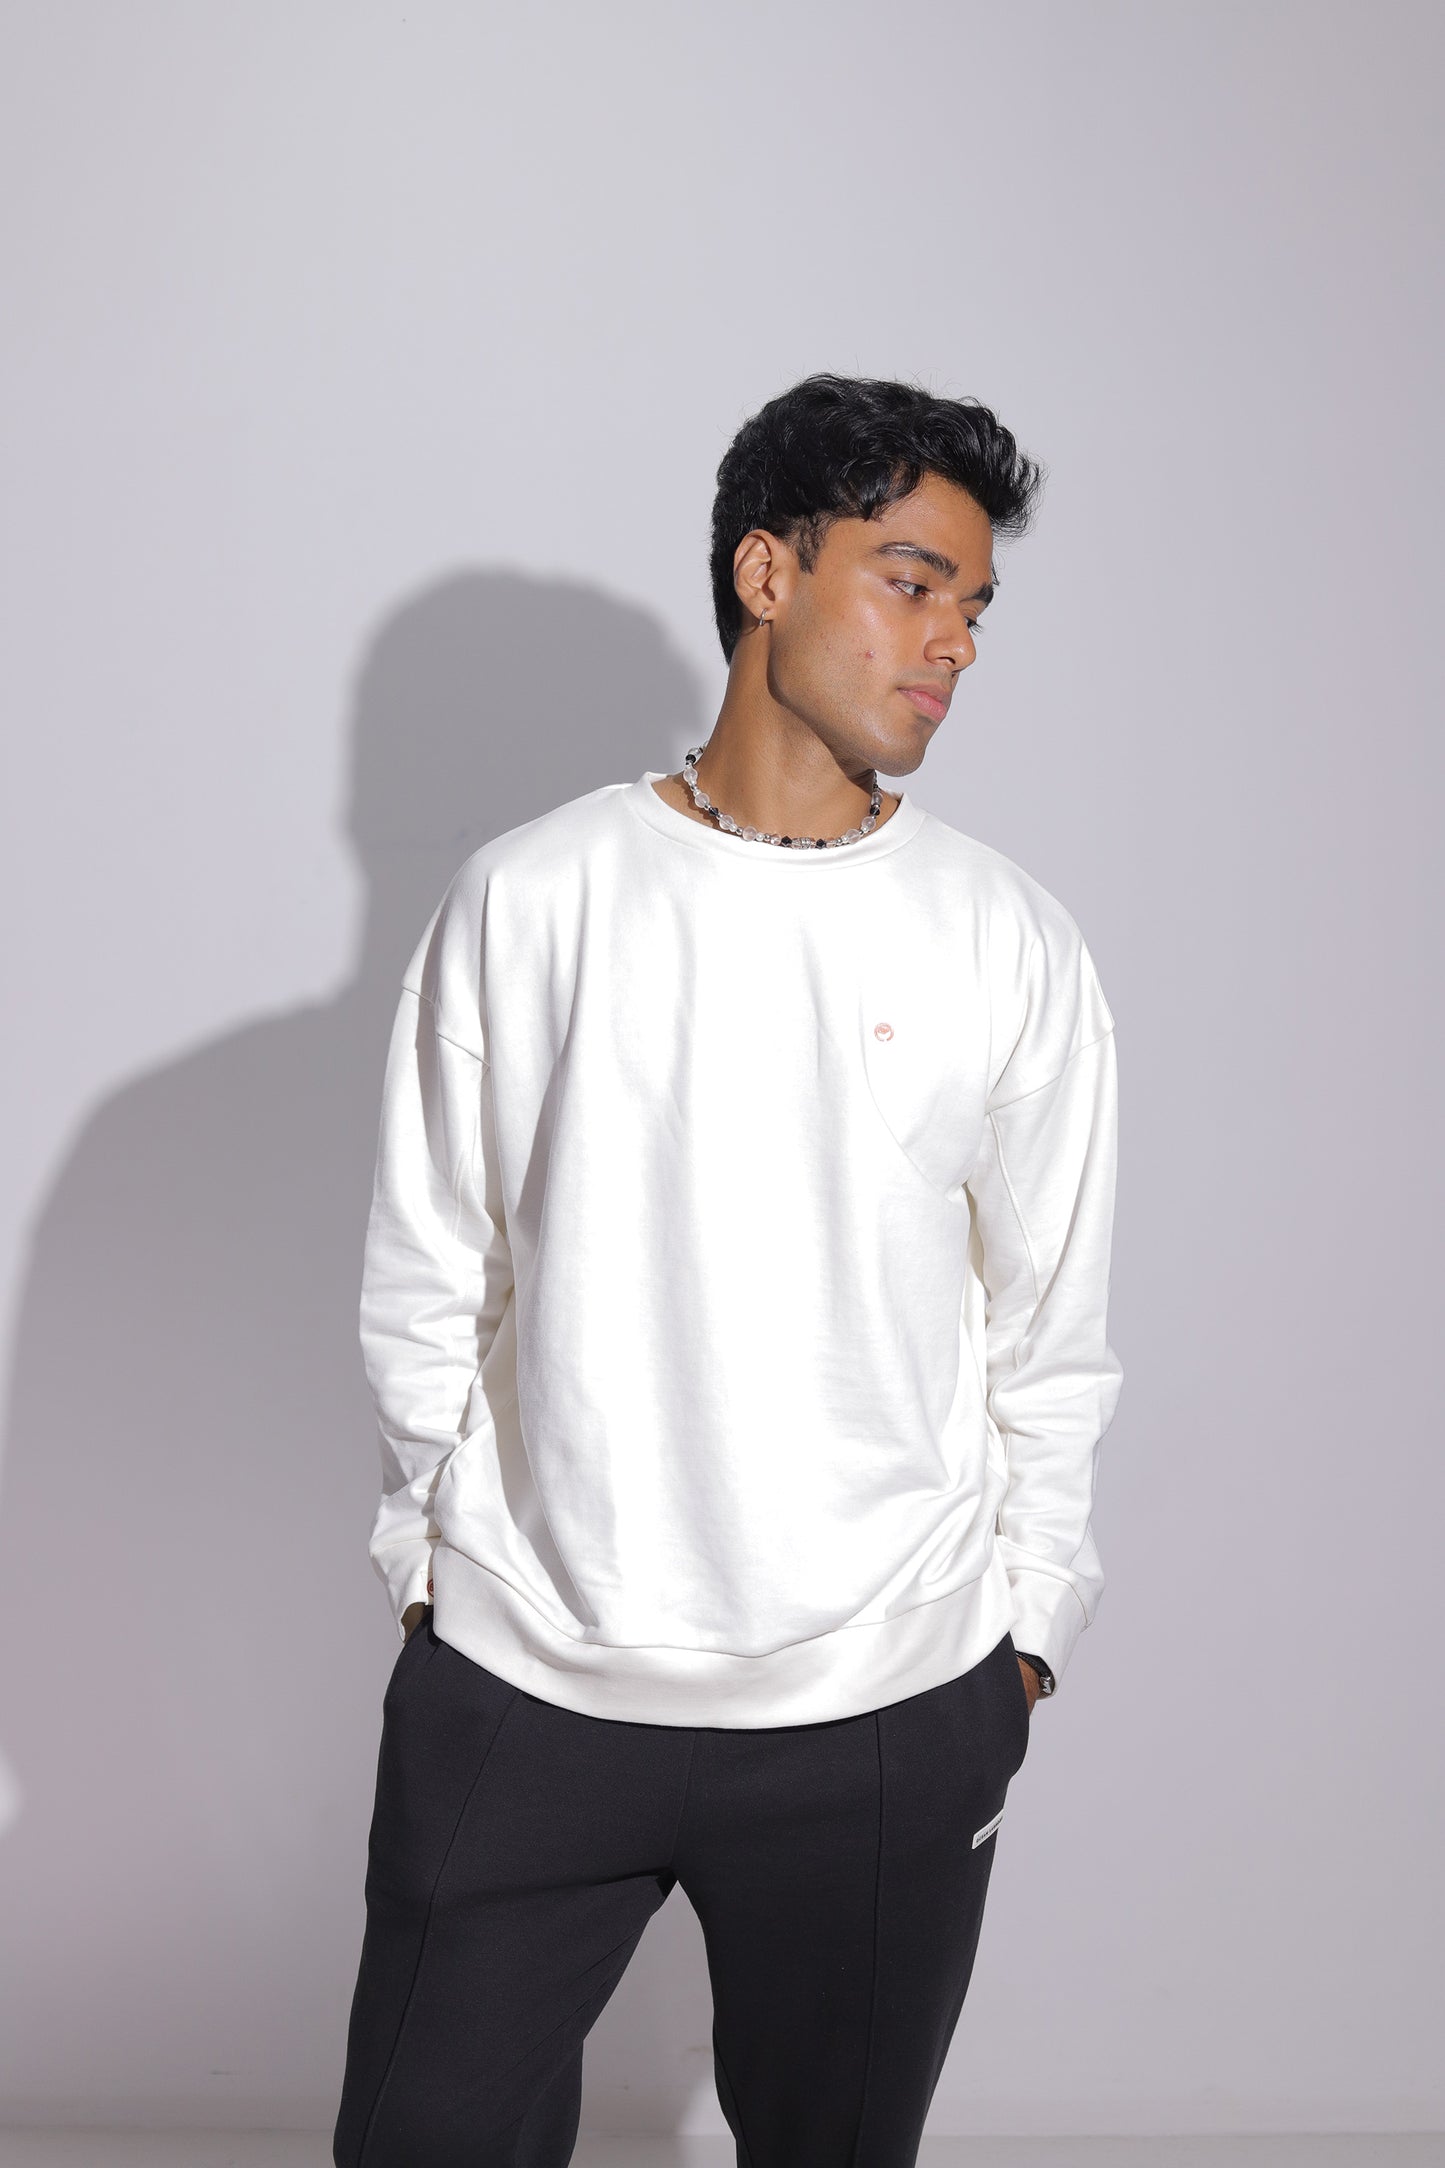 Lotus Sweatshirt for Men - Vintage White